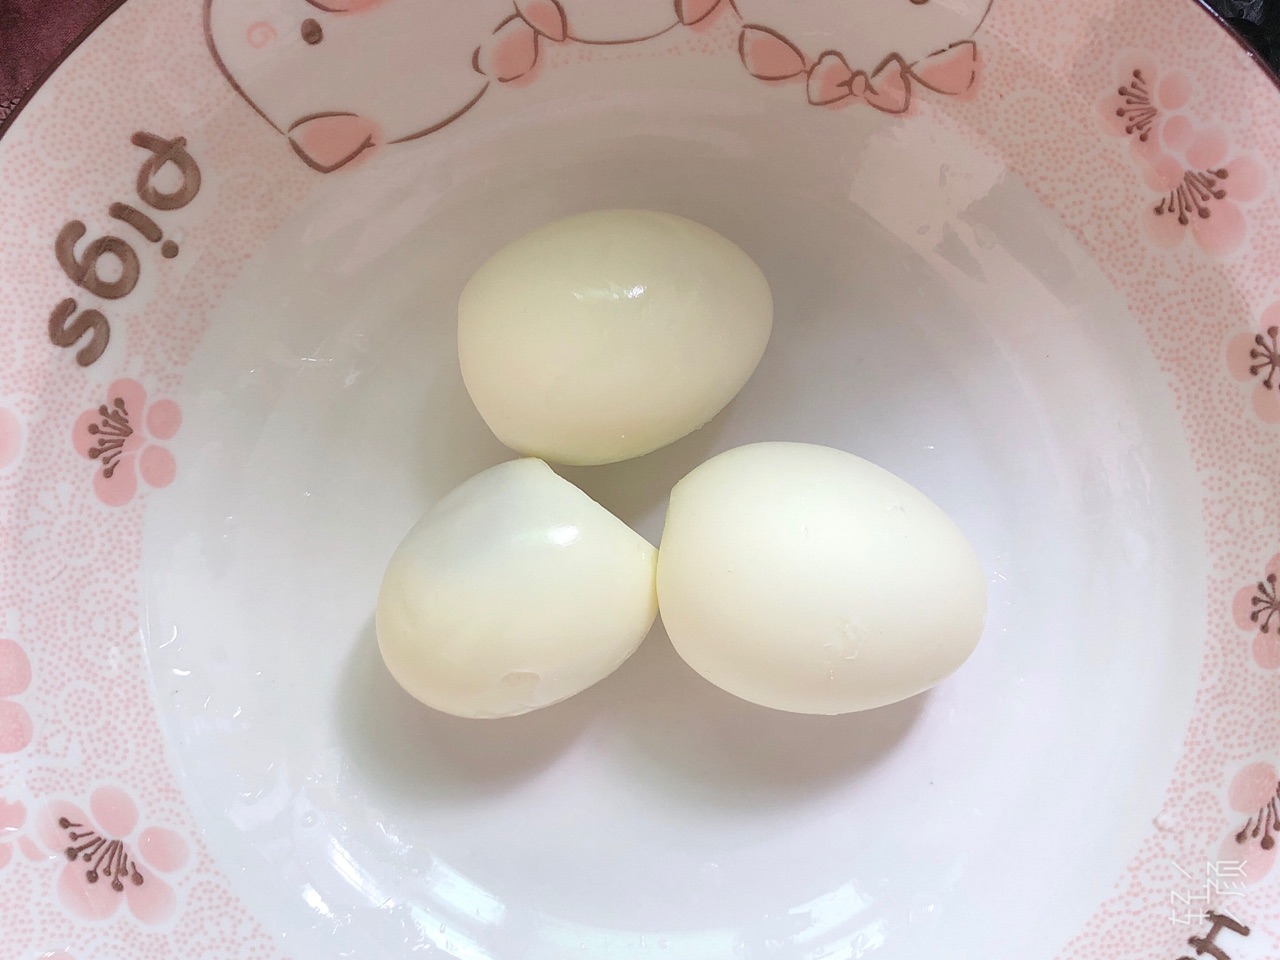 吃红糖鸡蛋有什么作用 - 早旭经验网